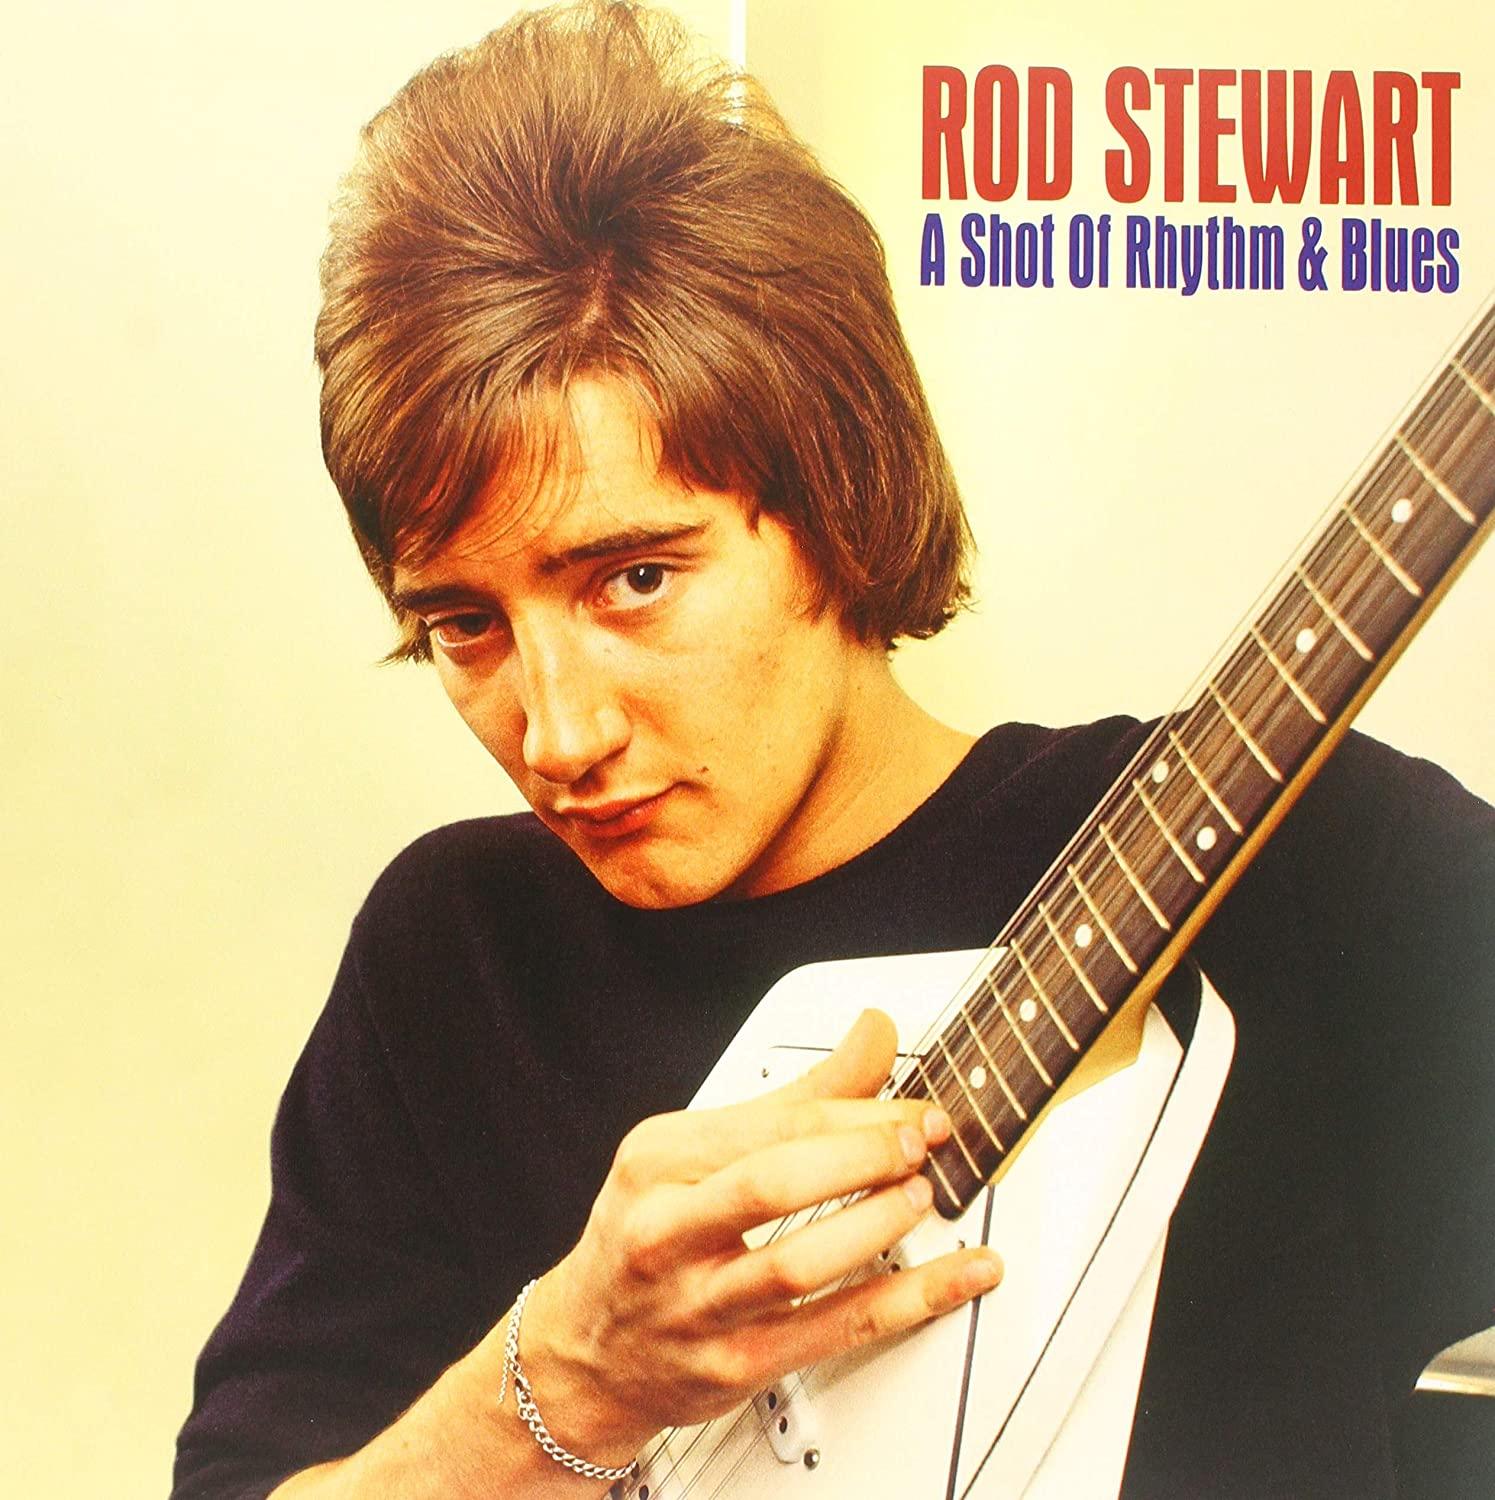 Rod Stewart - Shot Of Rhythm & Blues - Joco Records